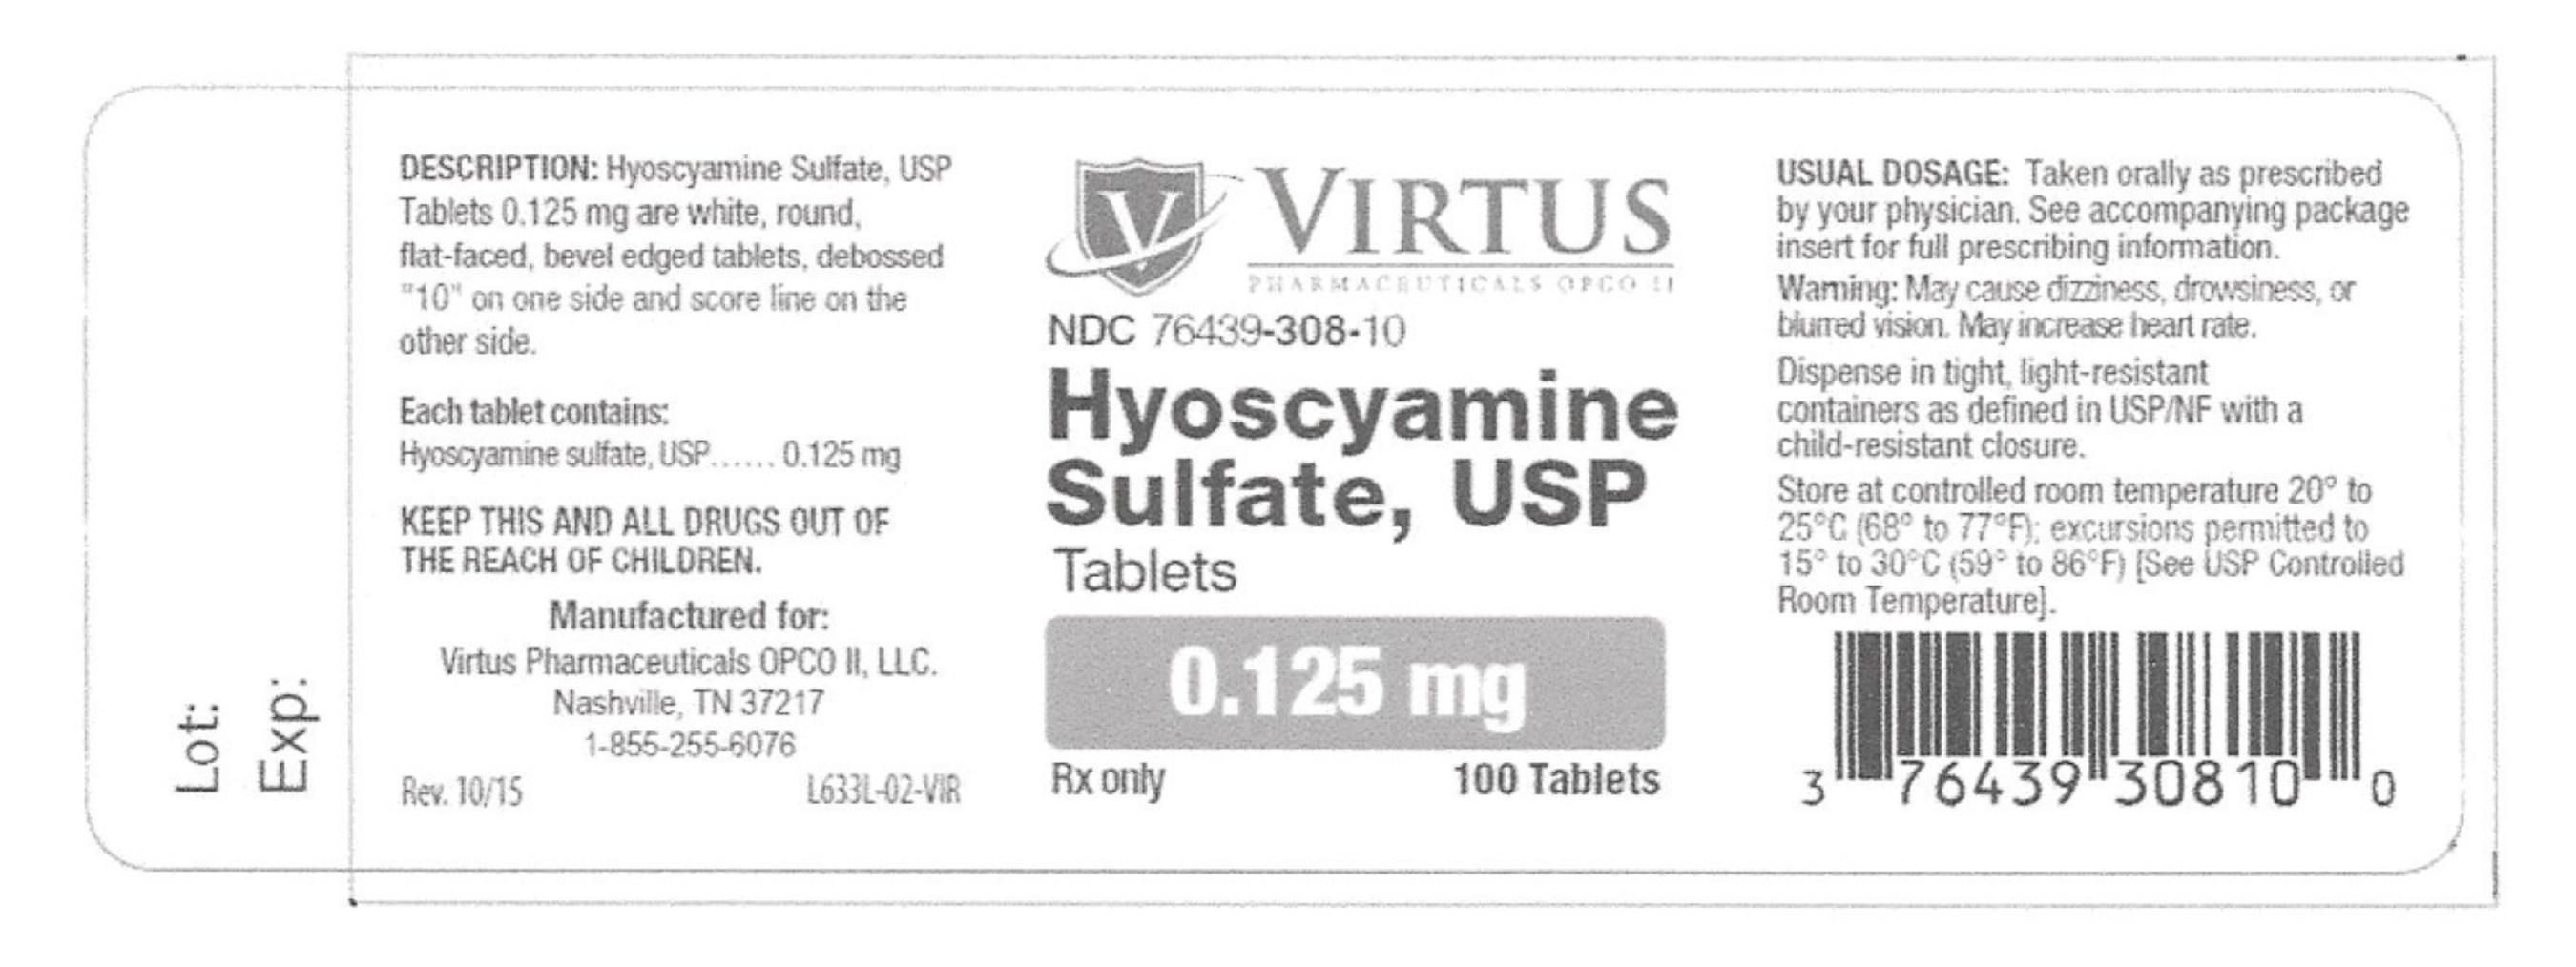 Hyoscyamine Sulfate tablets, NDC 76439-308-10: